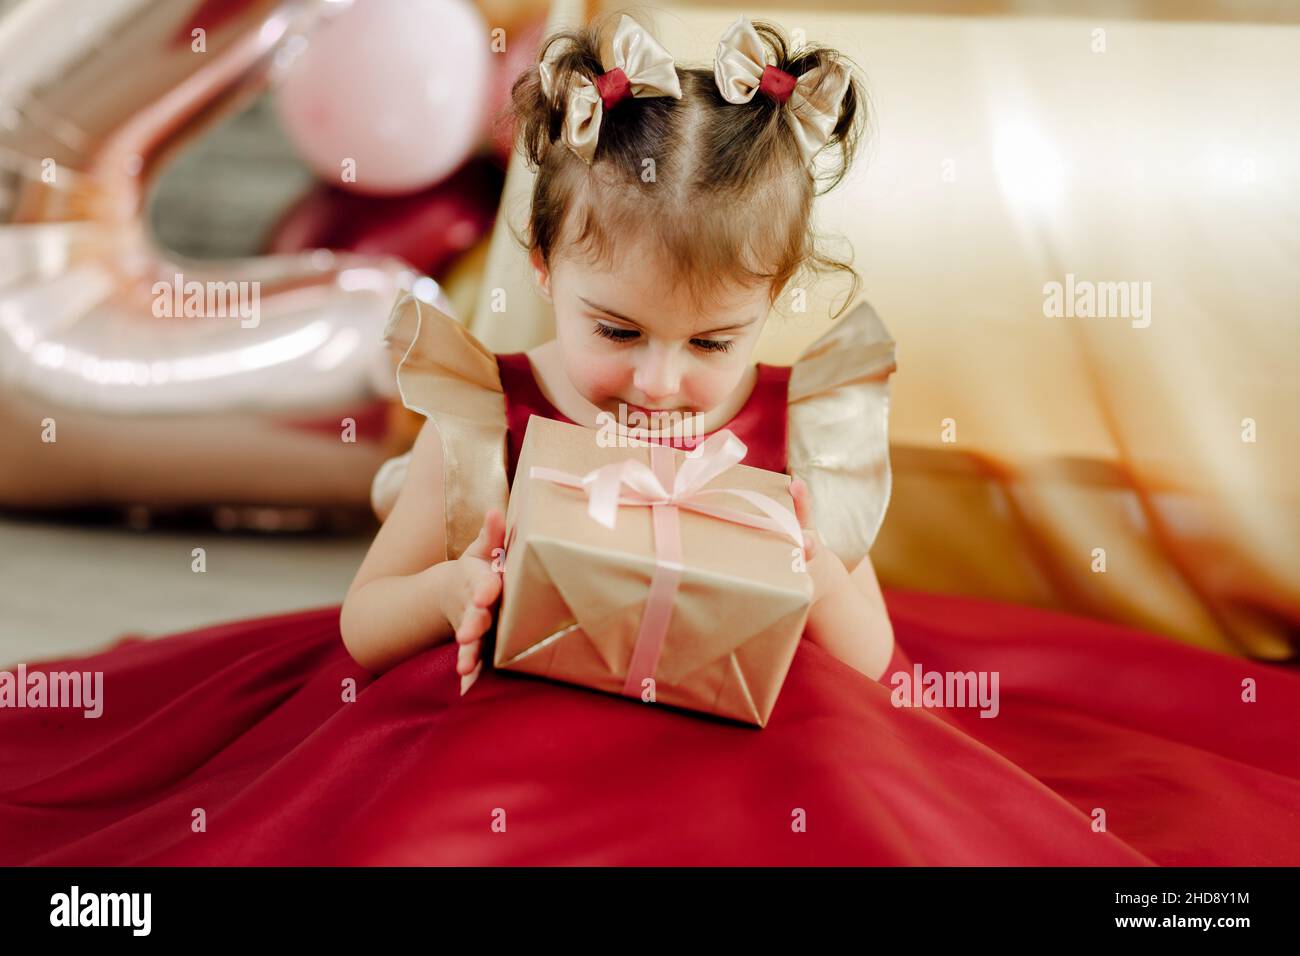 Staunend zwei Jahre altes Mädchen in einem roten Kleid hält und schaut sorgfältig auf ihr Geburtstagsgeschenk. Schöne Baby Mädchen Geburtstag Fotoshooting Stockfoto